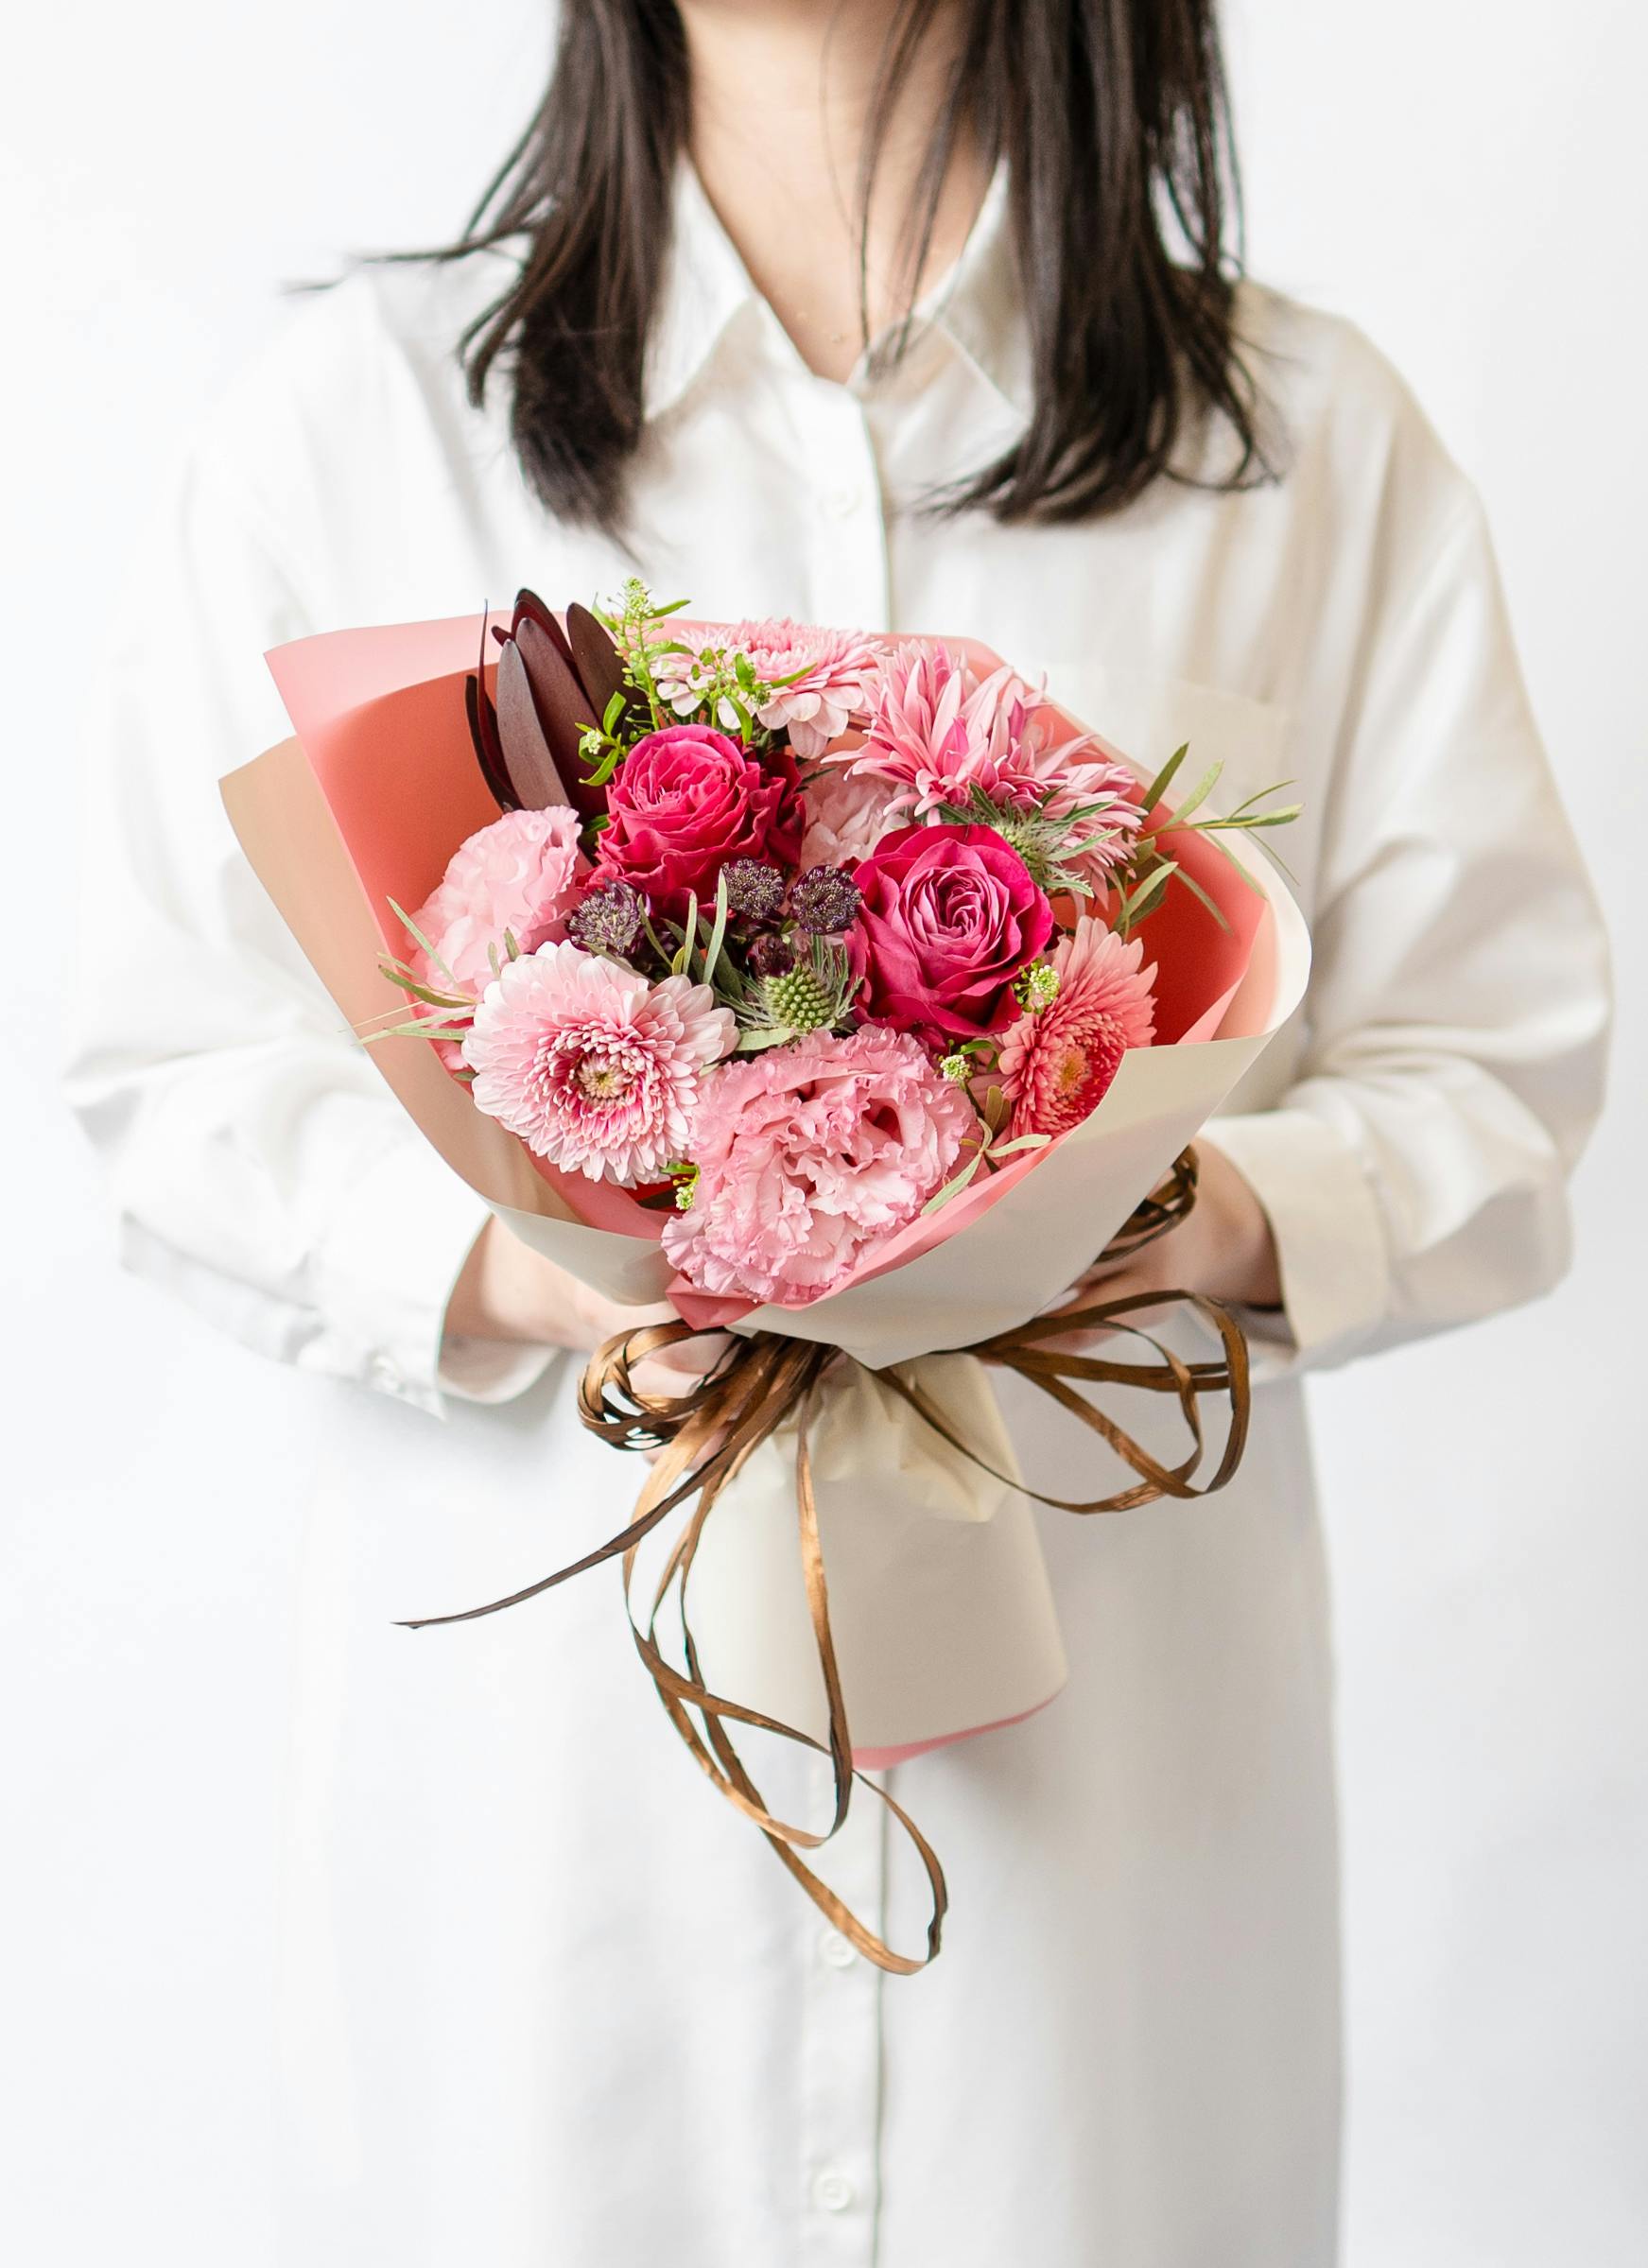 【misen2014 さま】* ornament ❀ 花束を持った女の子サリースコット